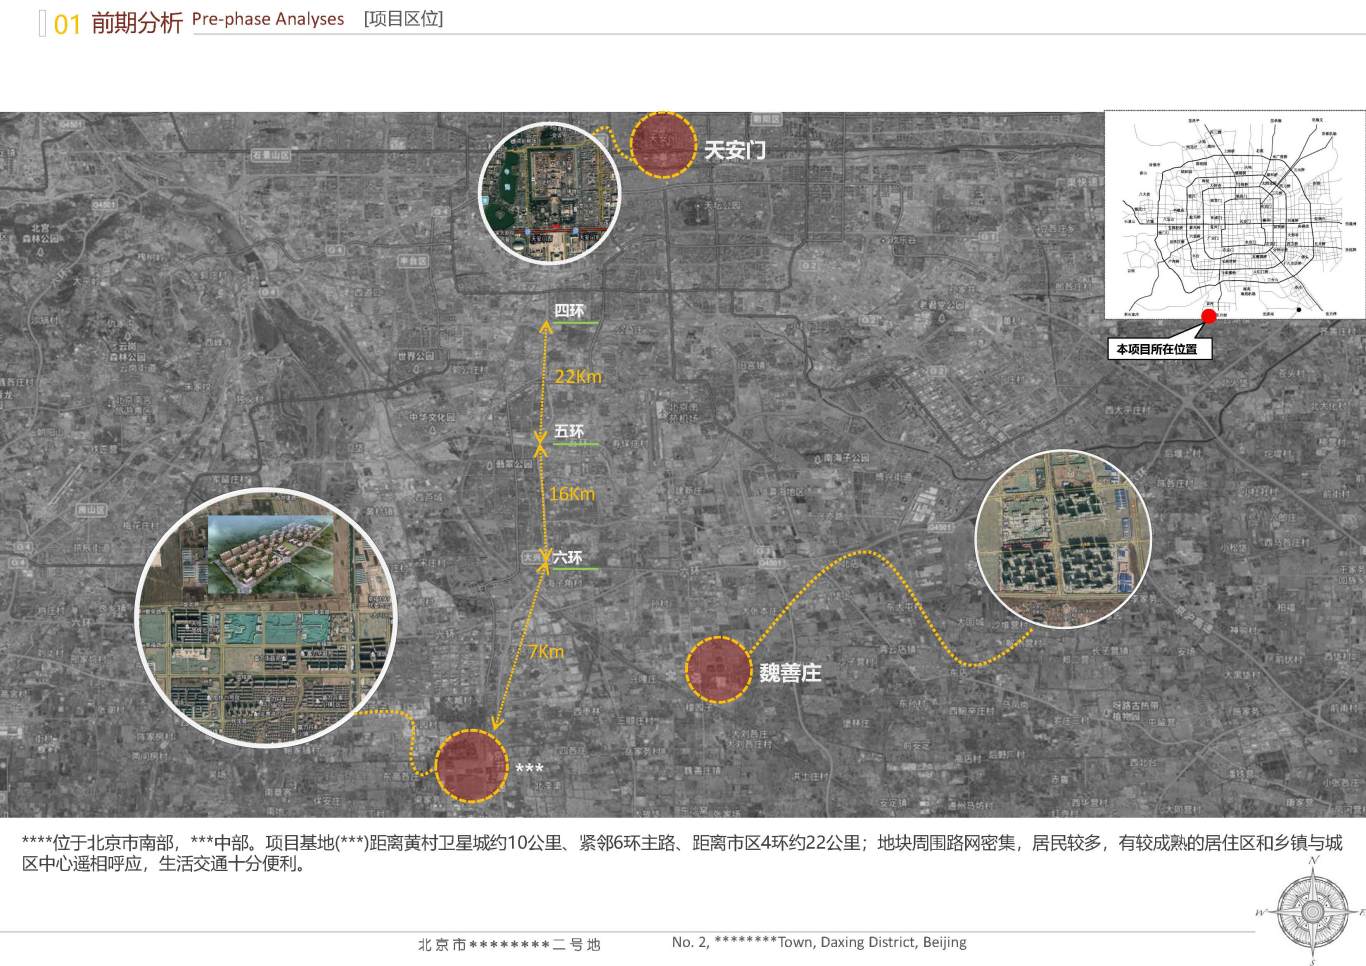 北京市大兴区*****二号地夜景照明项目案例图2